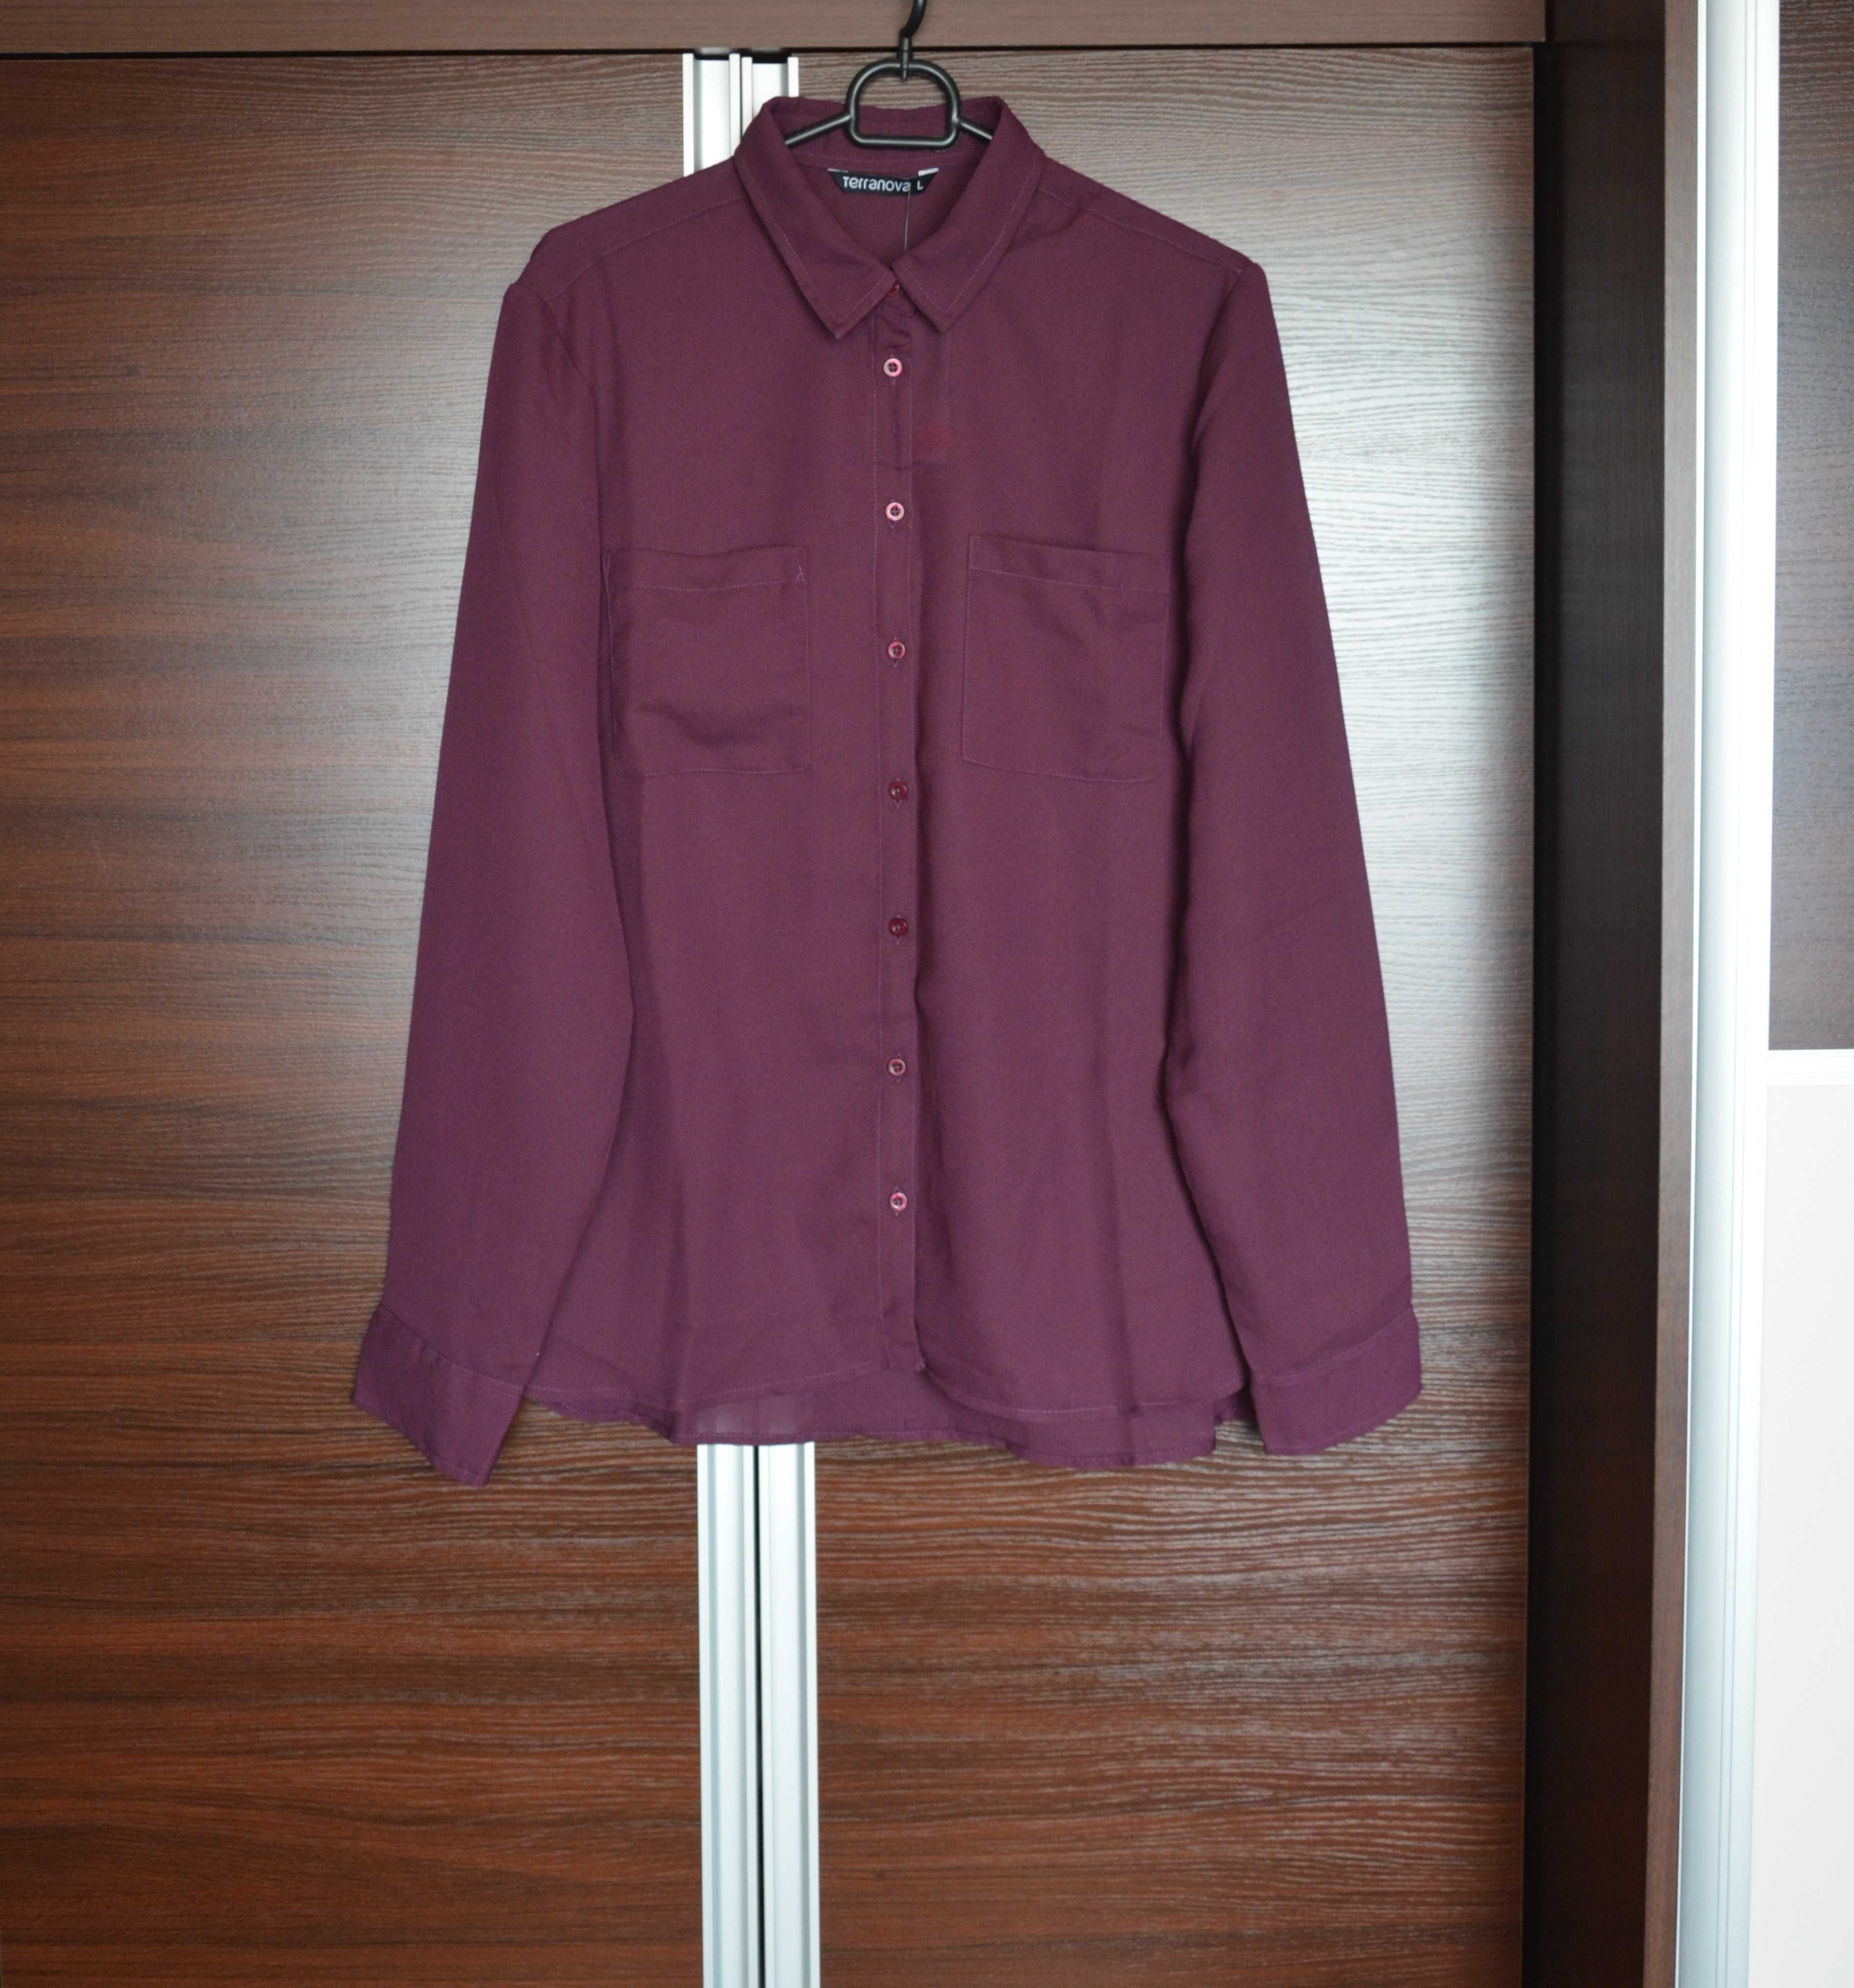 Nowa fioletowa śliwkowa koszula szyfonowa z kieszeniami Terranova